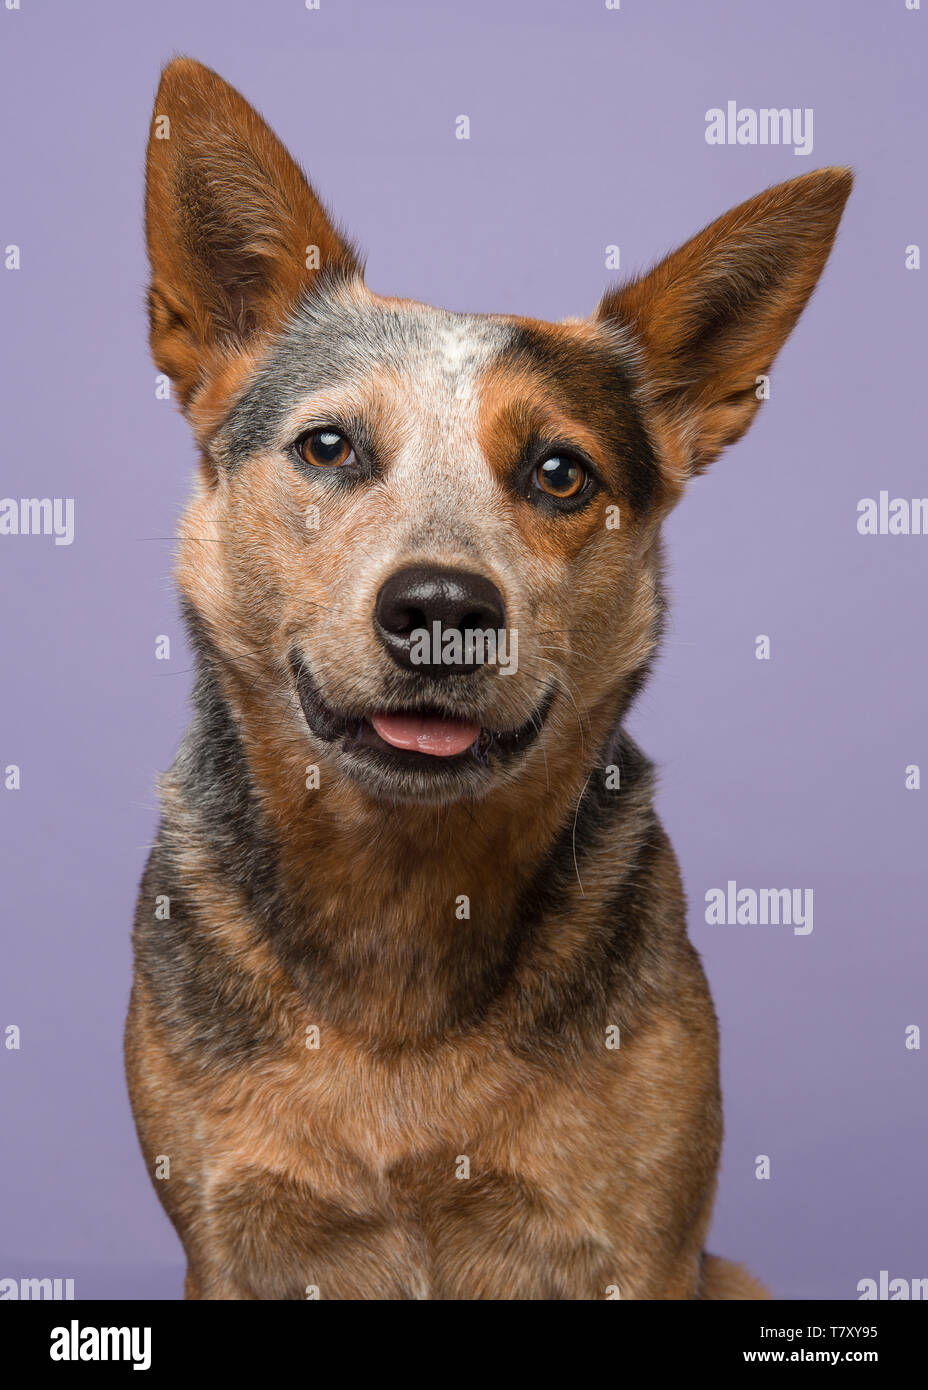 Porträt einer Australian Cattle Dog suchen cute mit Zunge etwas außerhalb auf einem violetten Hintergrund in einem Bild vertikal Stockfoto